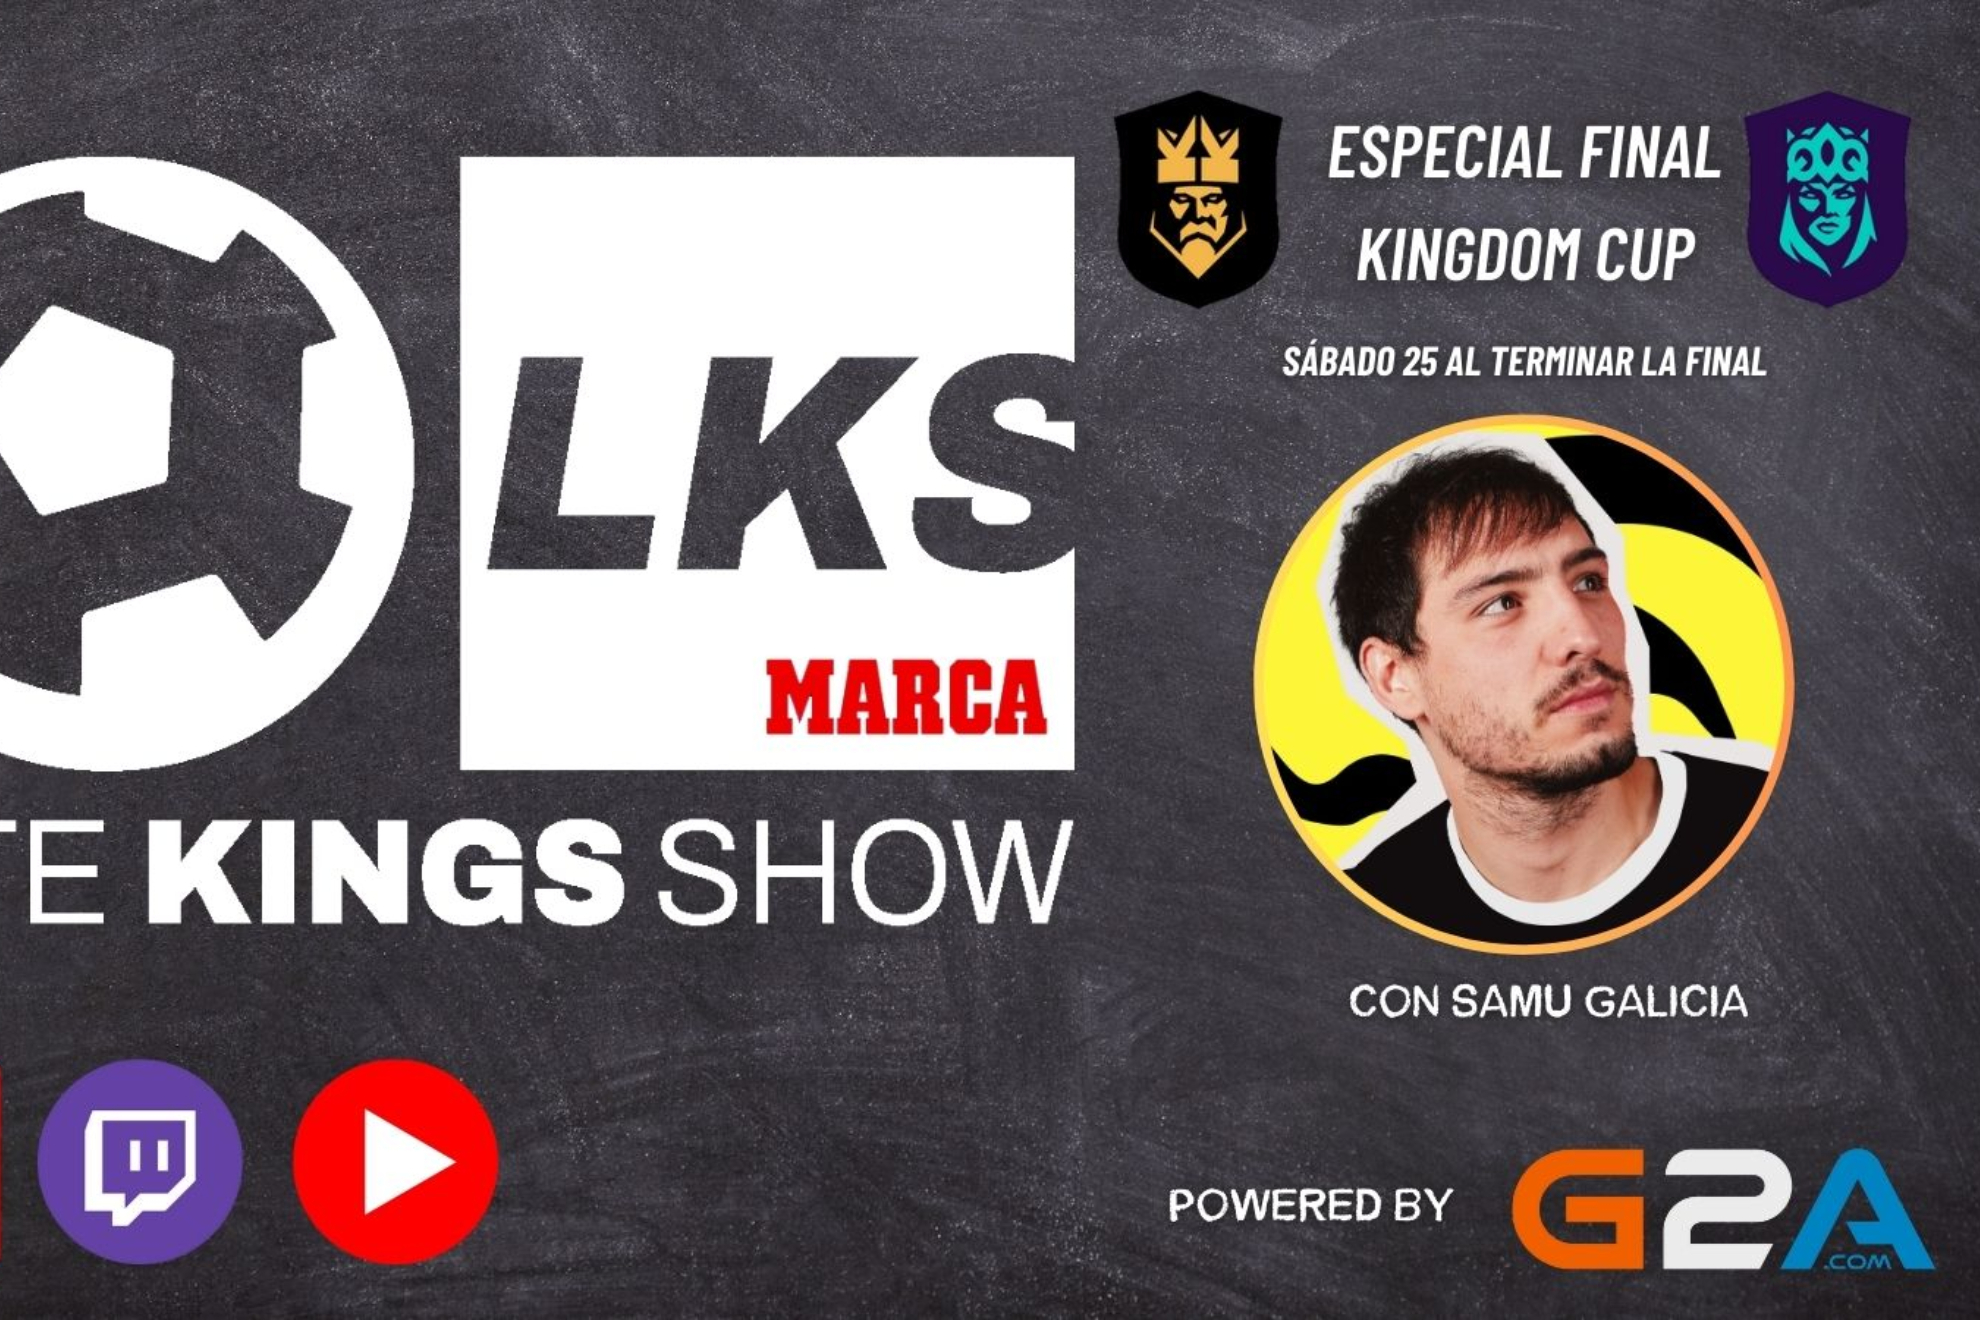 LATE KINGS SHOW, en directo | Todo sobre la final de la Kingdom Cup